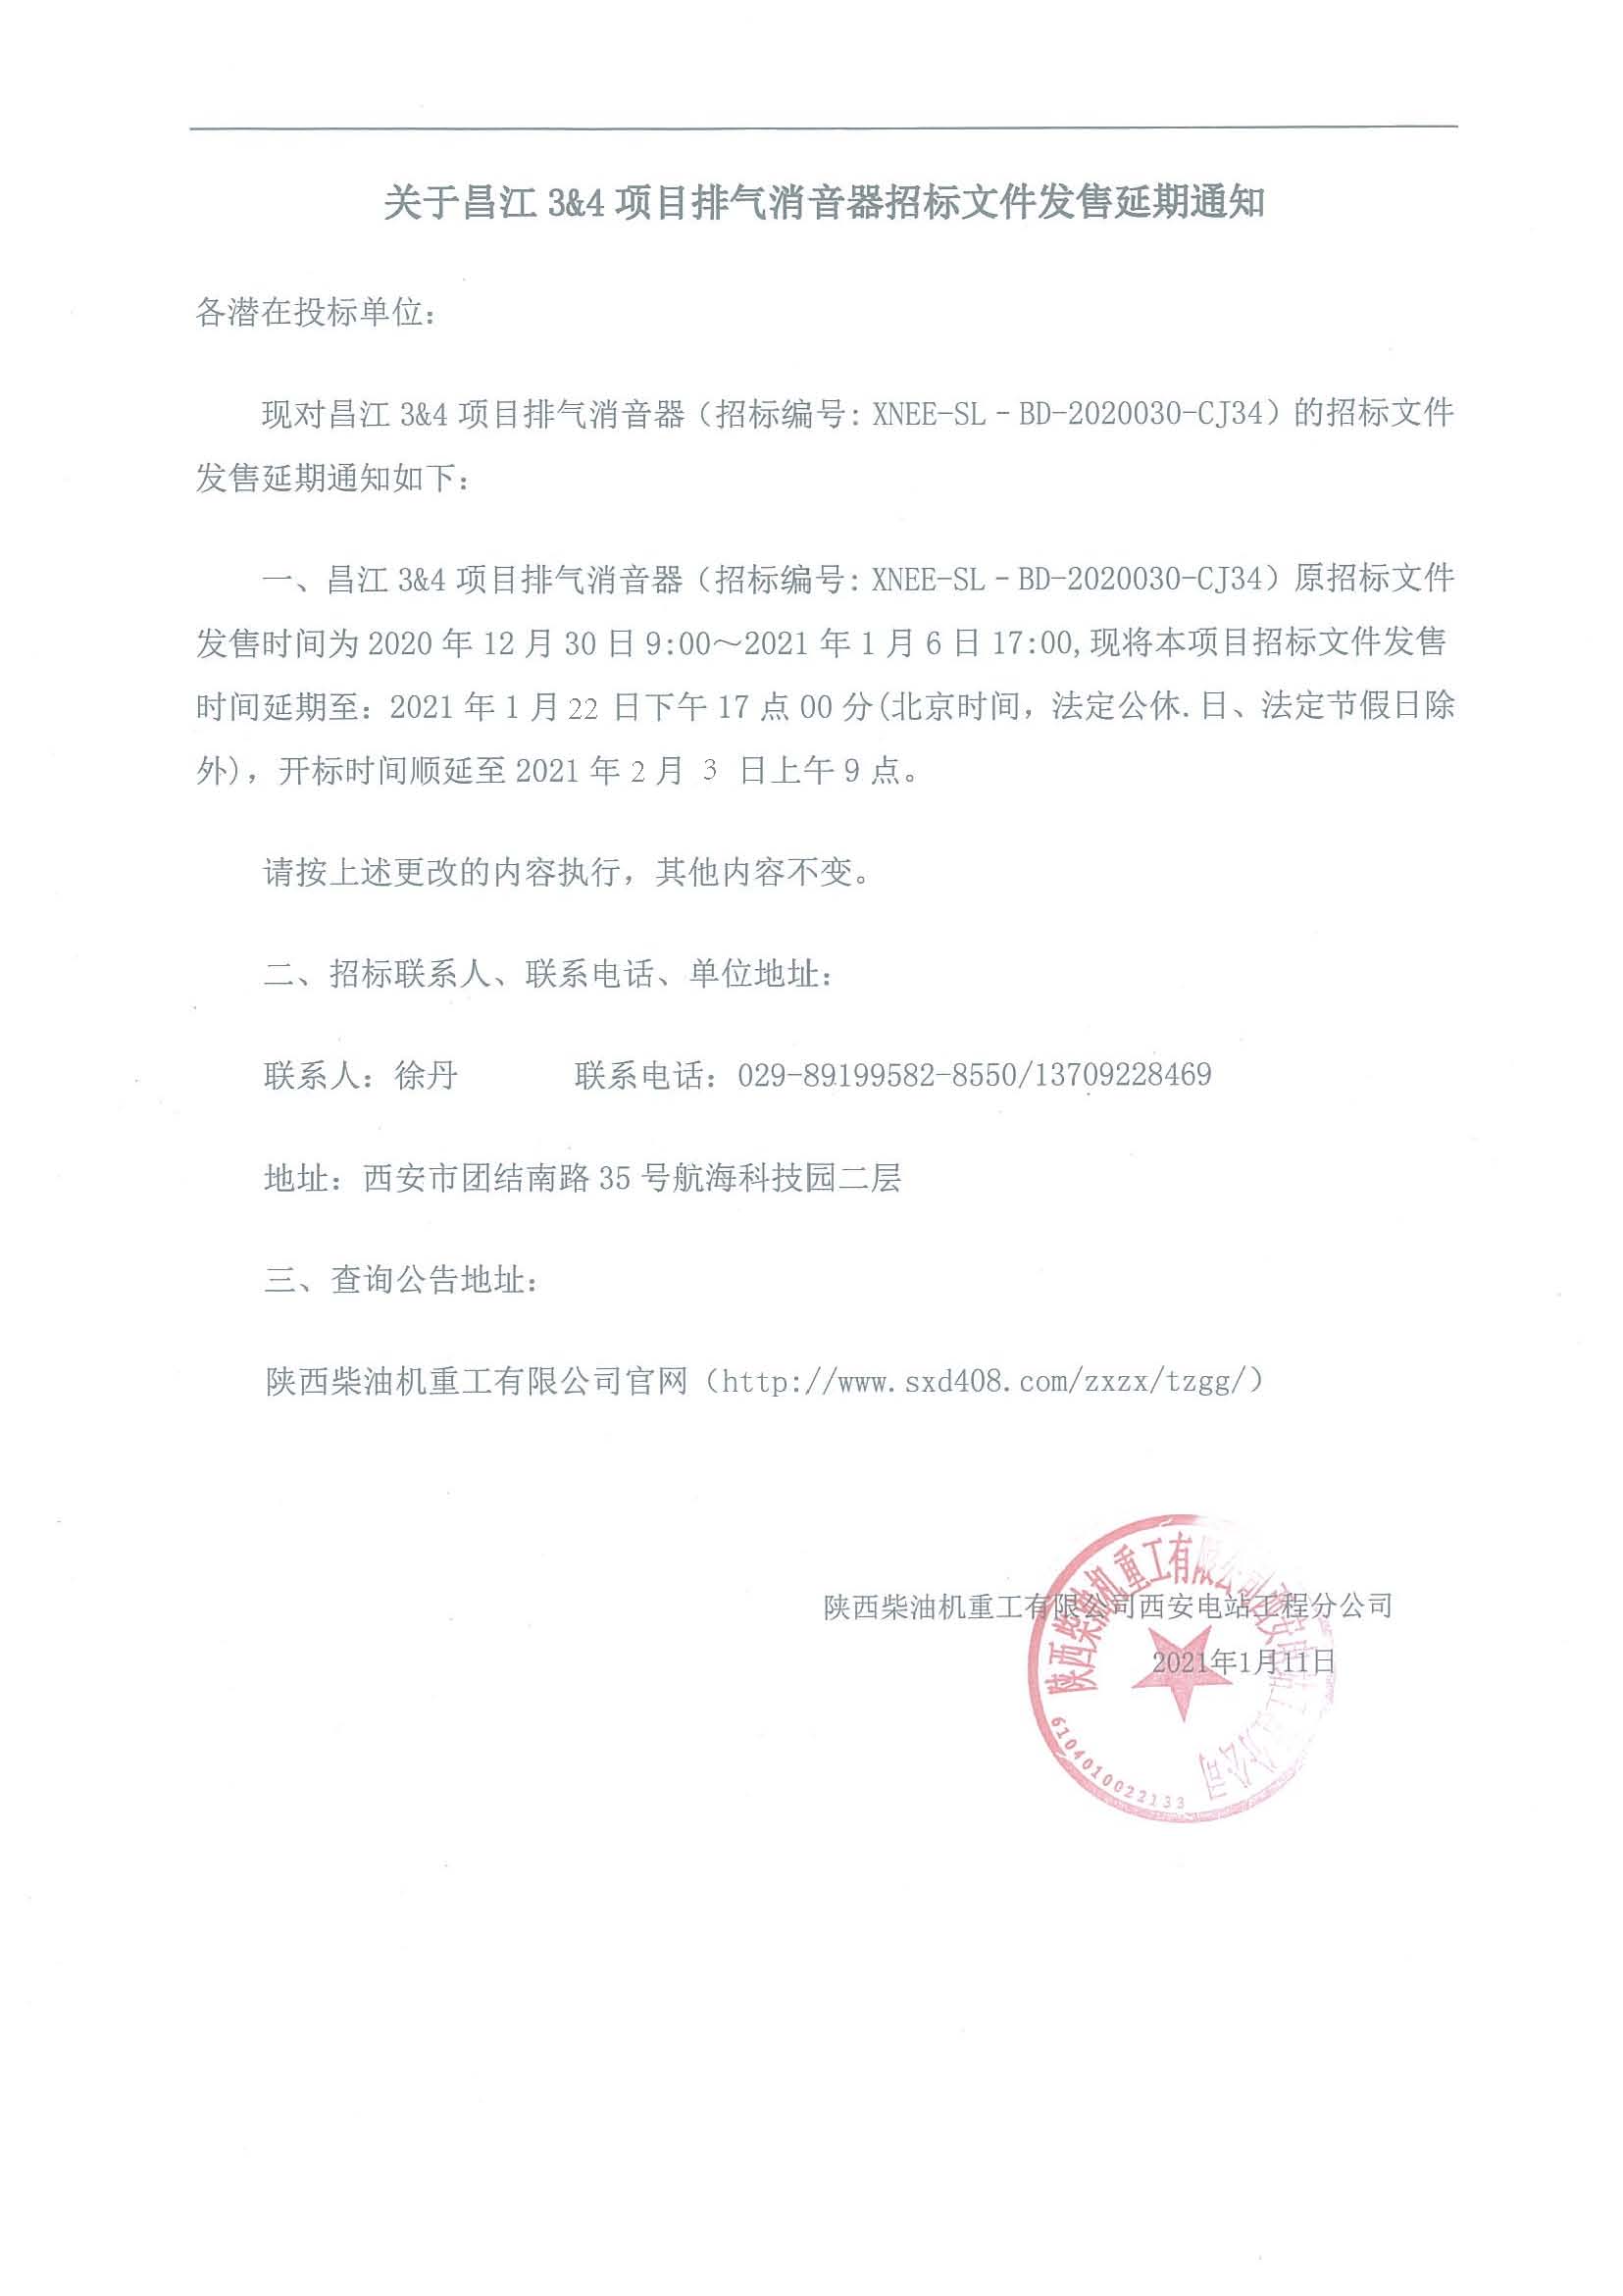 关于昌江34项目排气消音器招标文件发售延期通知.jpg